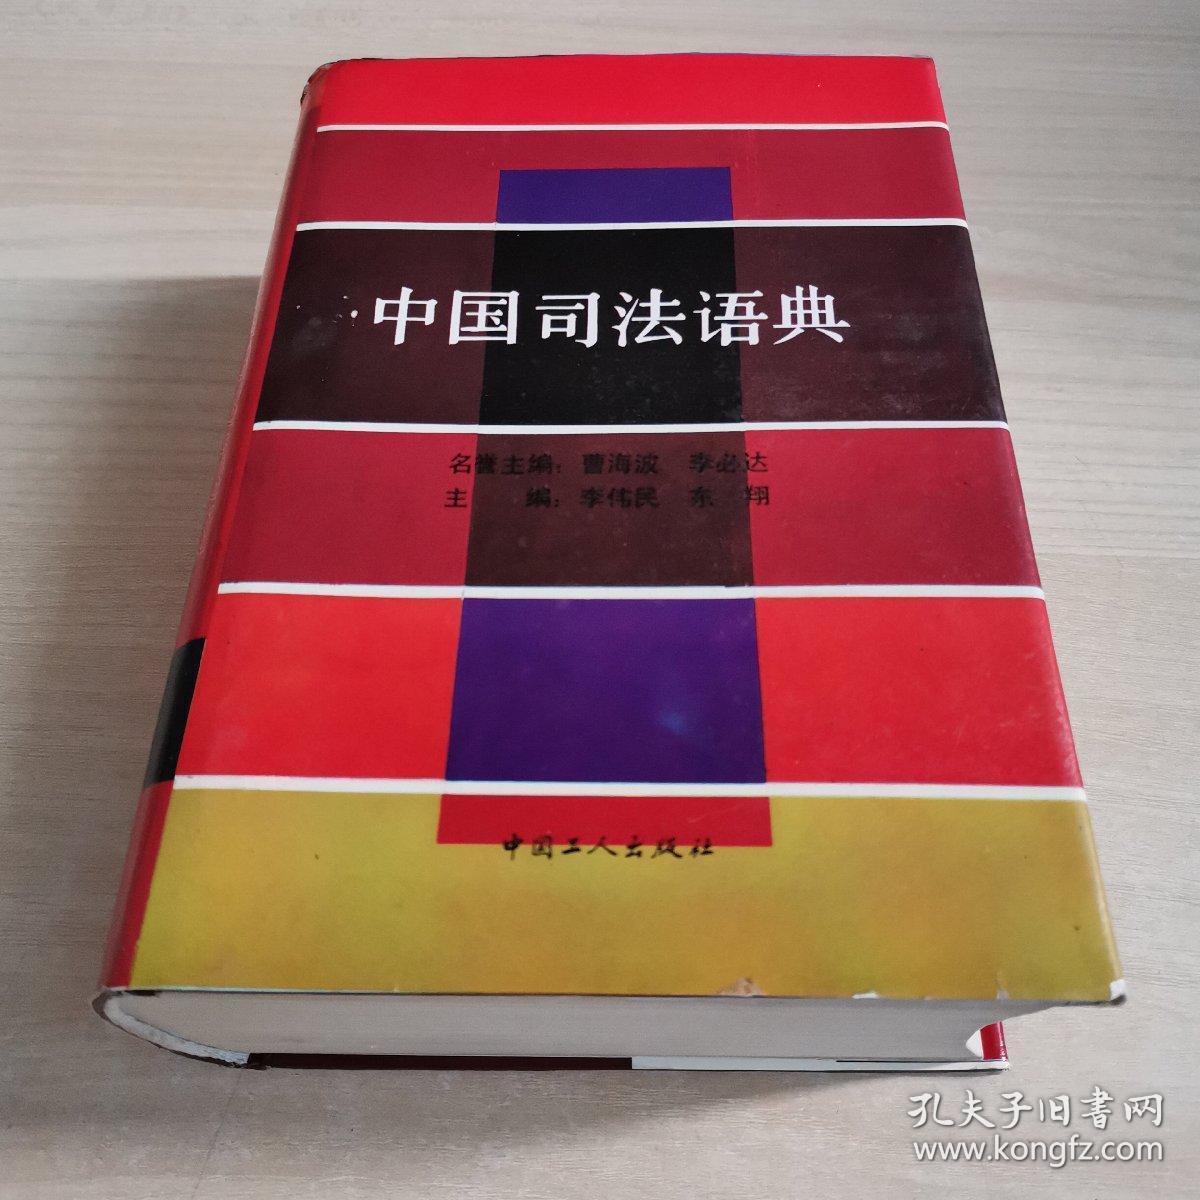 中国司法语典